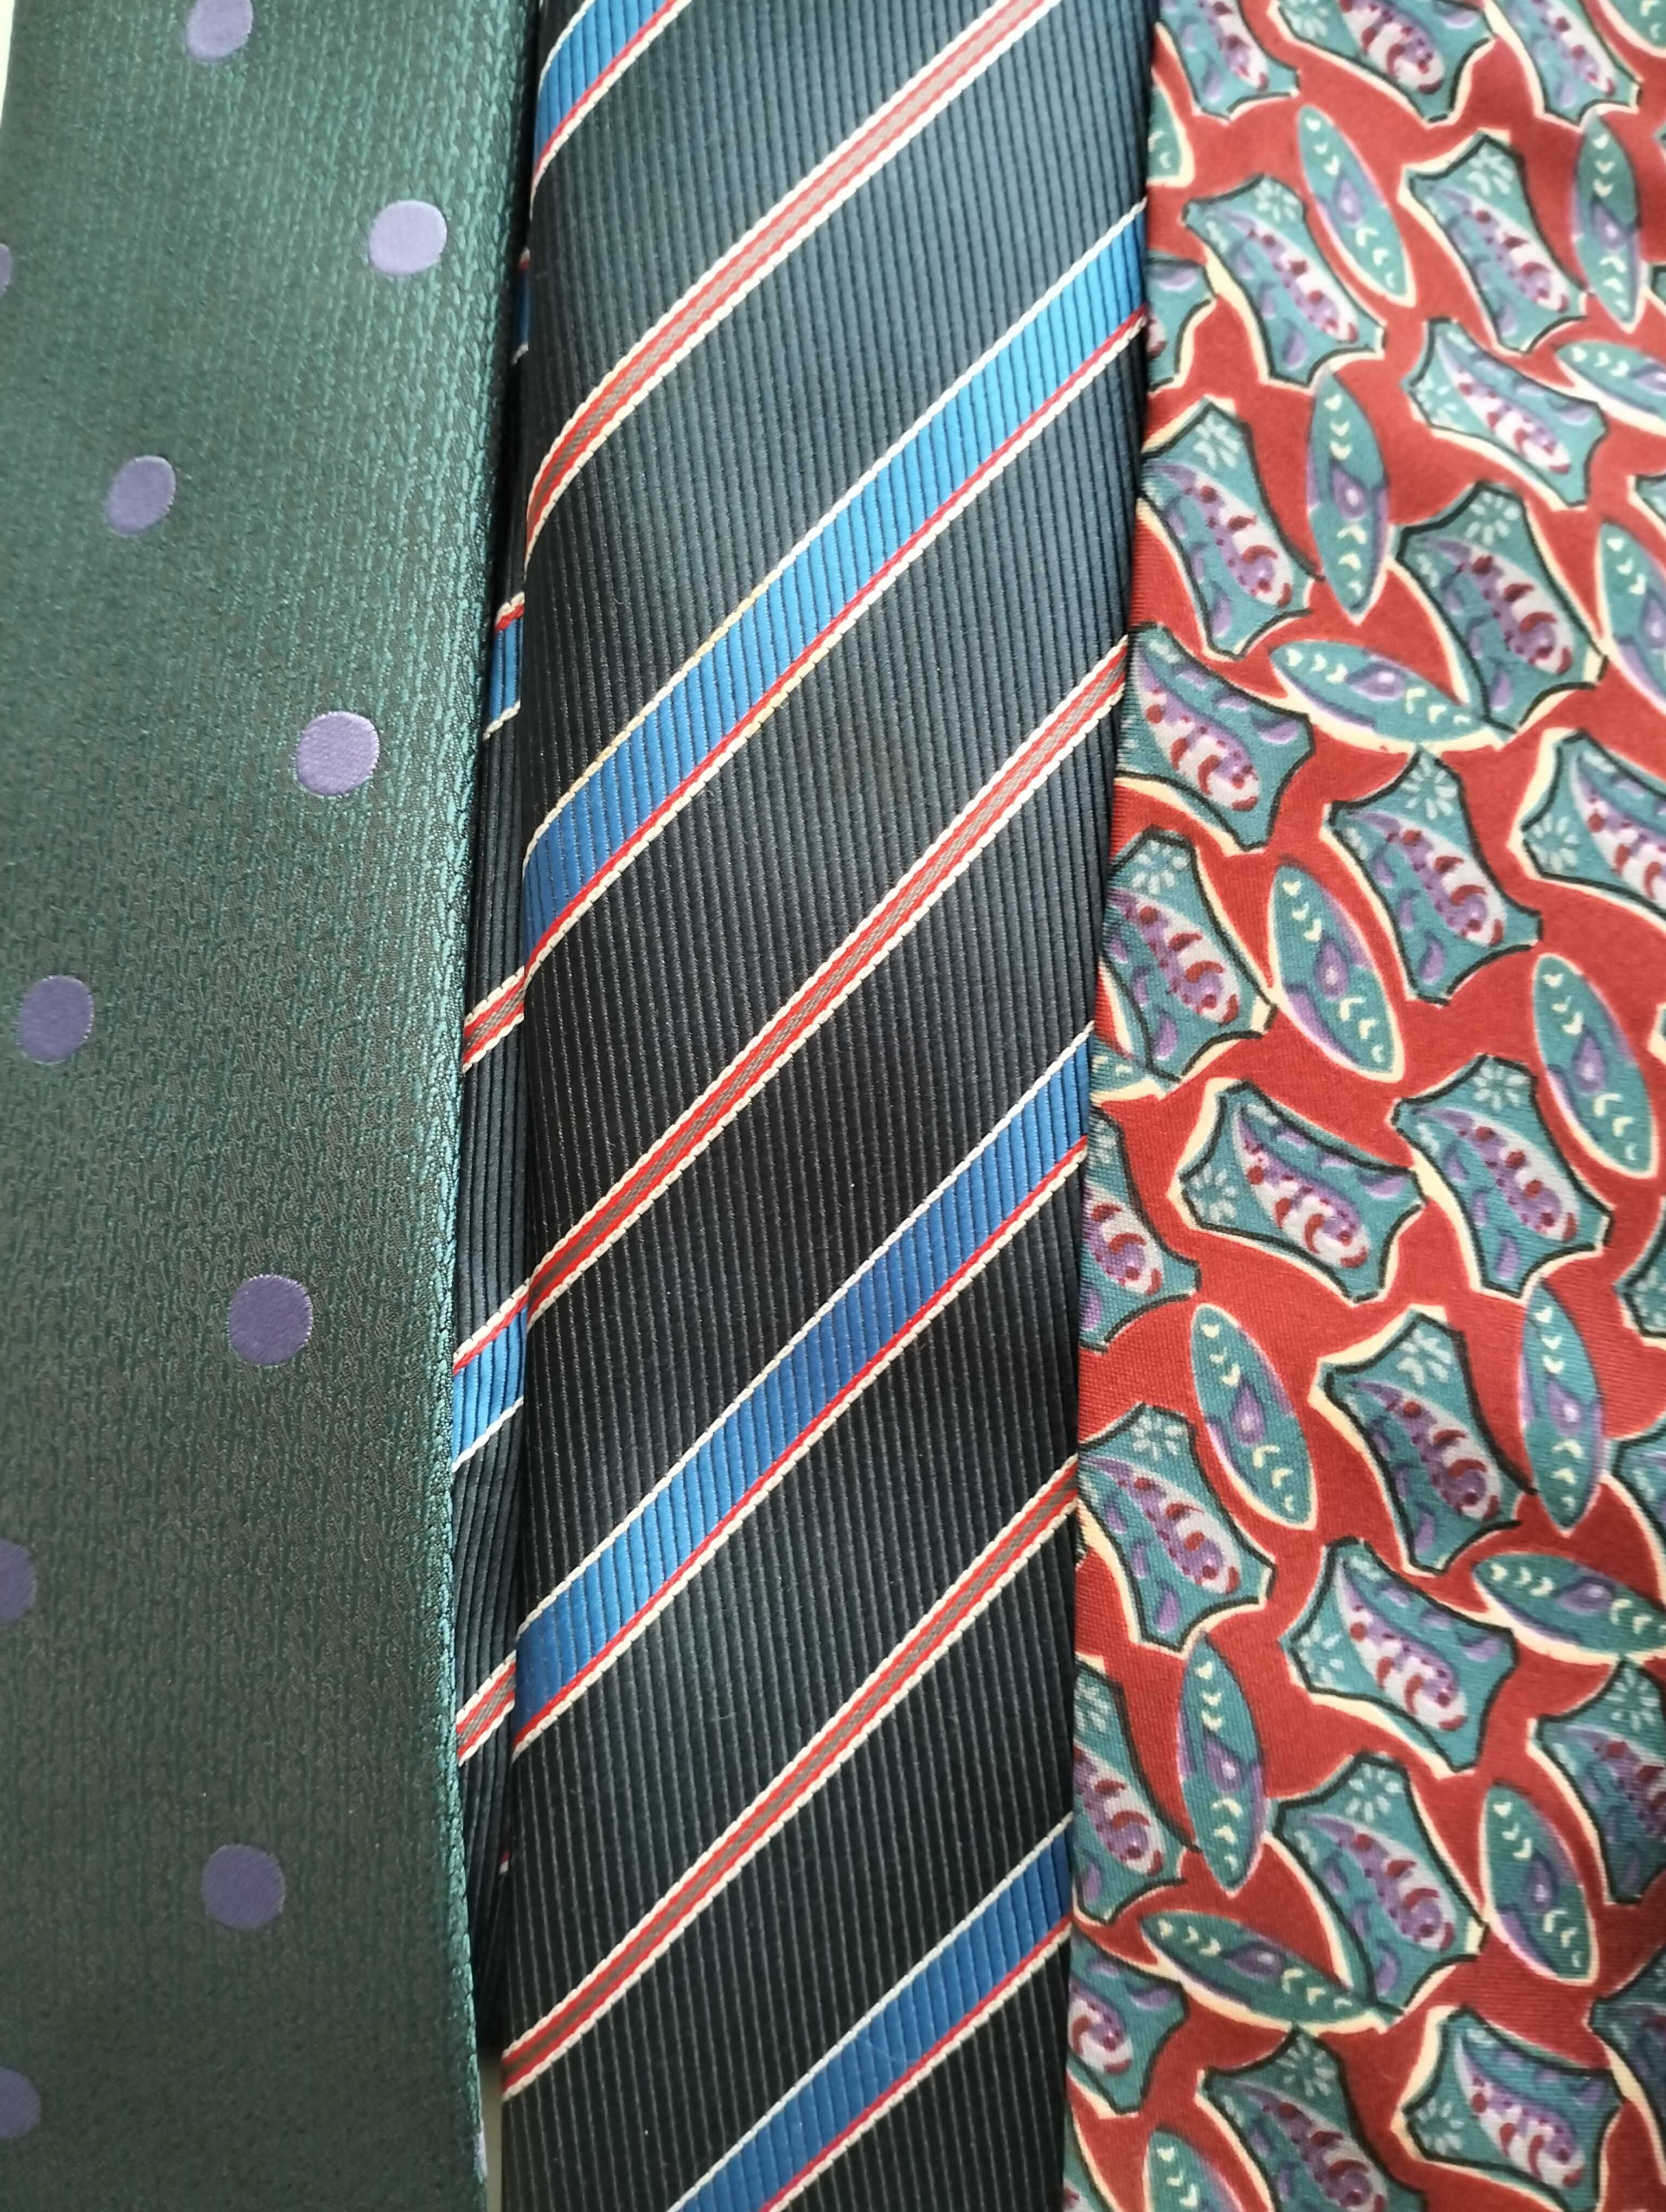 gravatas antigas e modernas